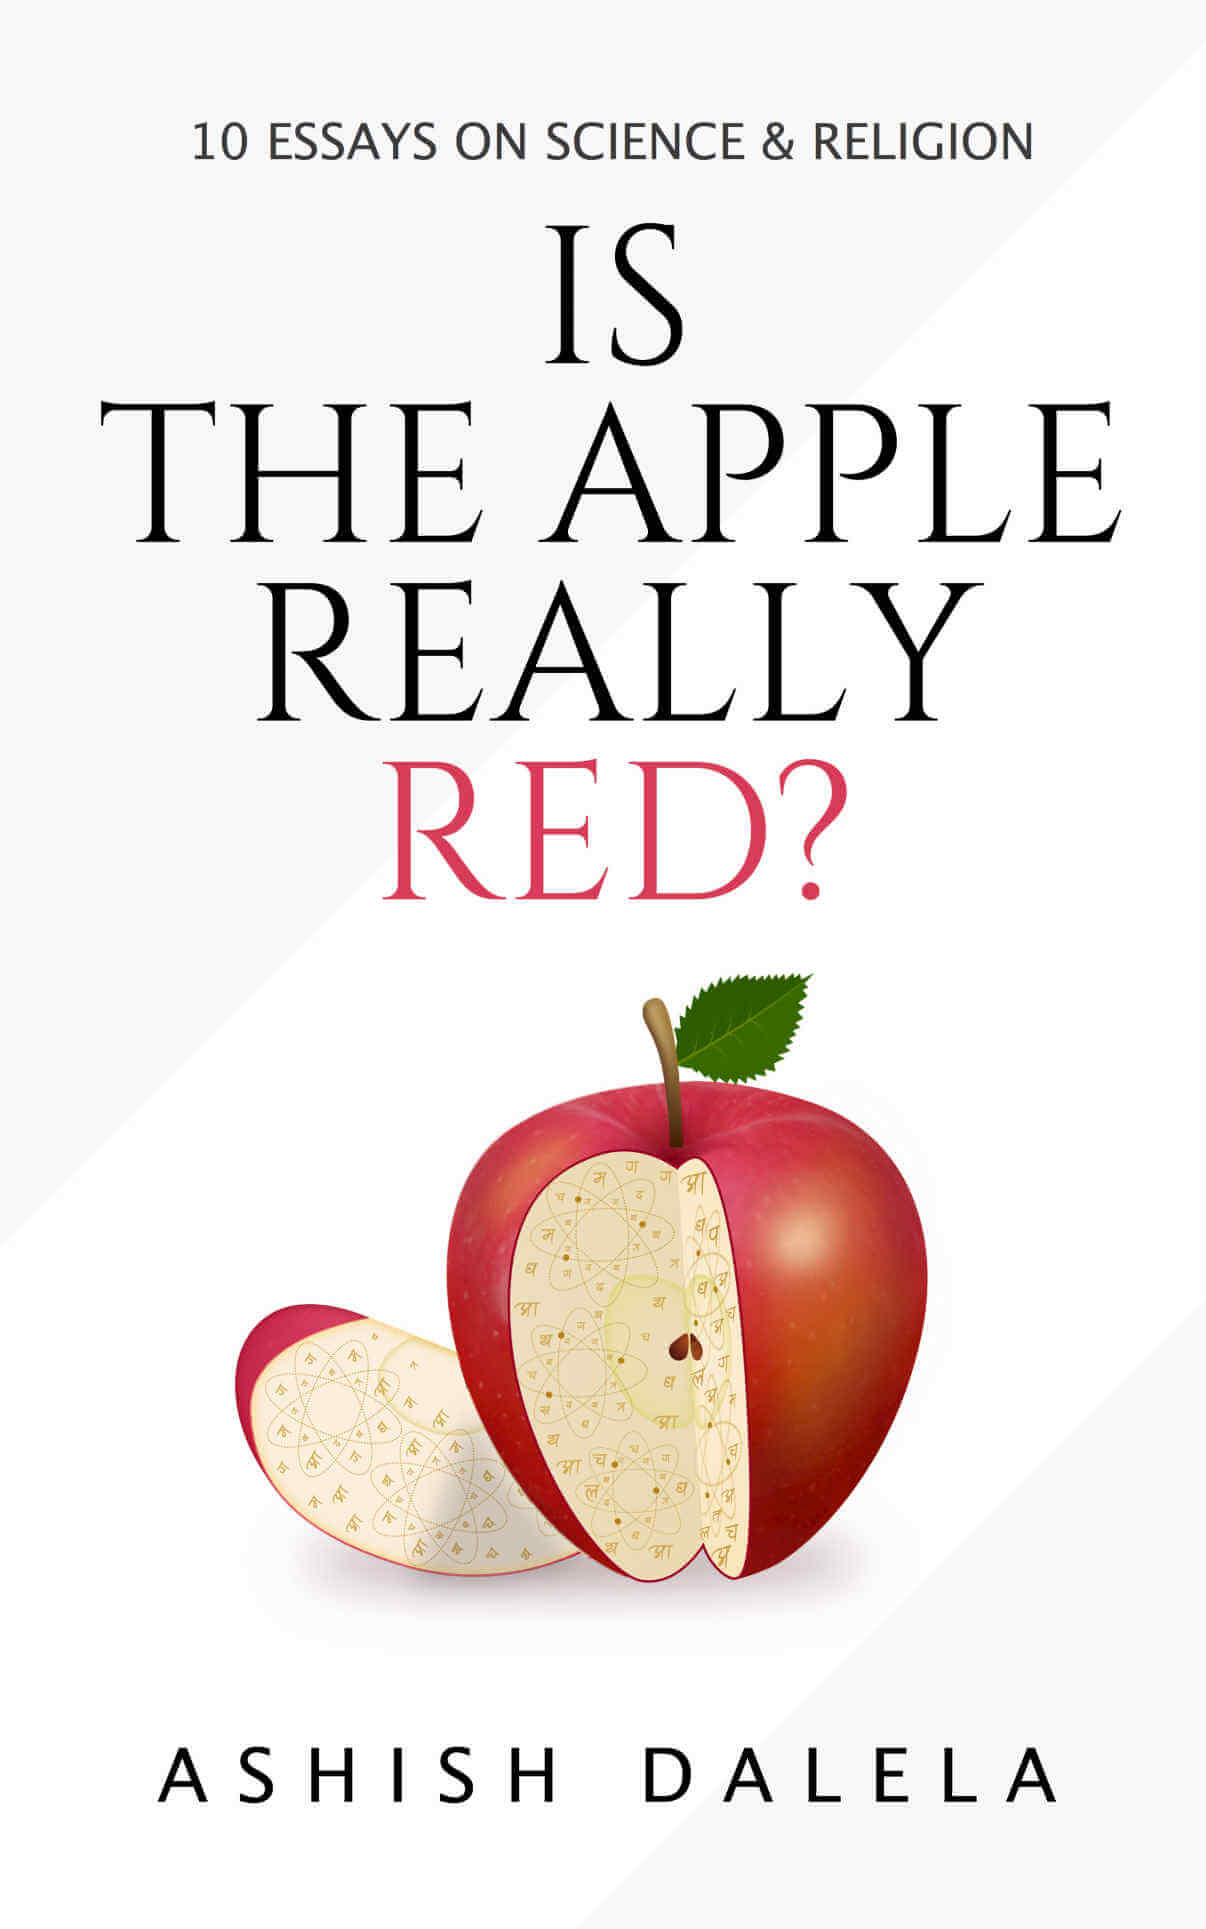 La mela è davvero rossa?: 10 saggi su scienza e religione